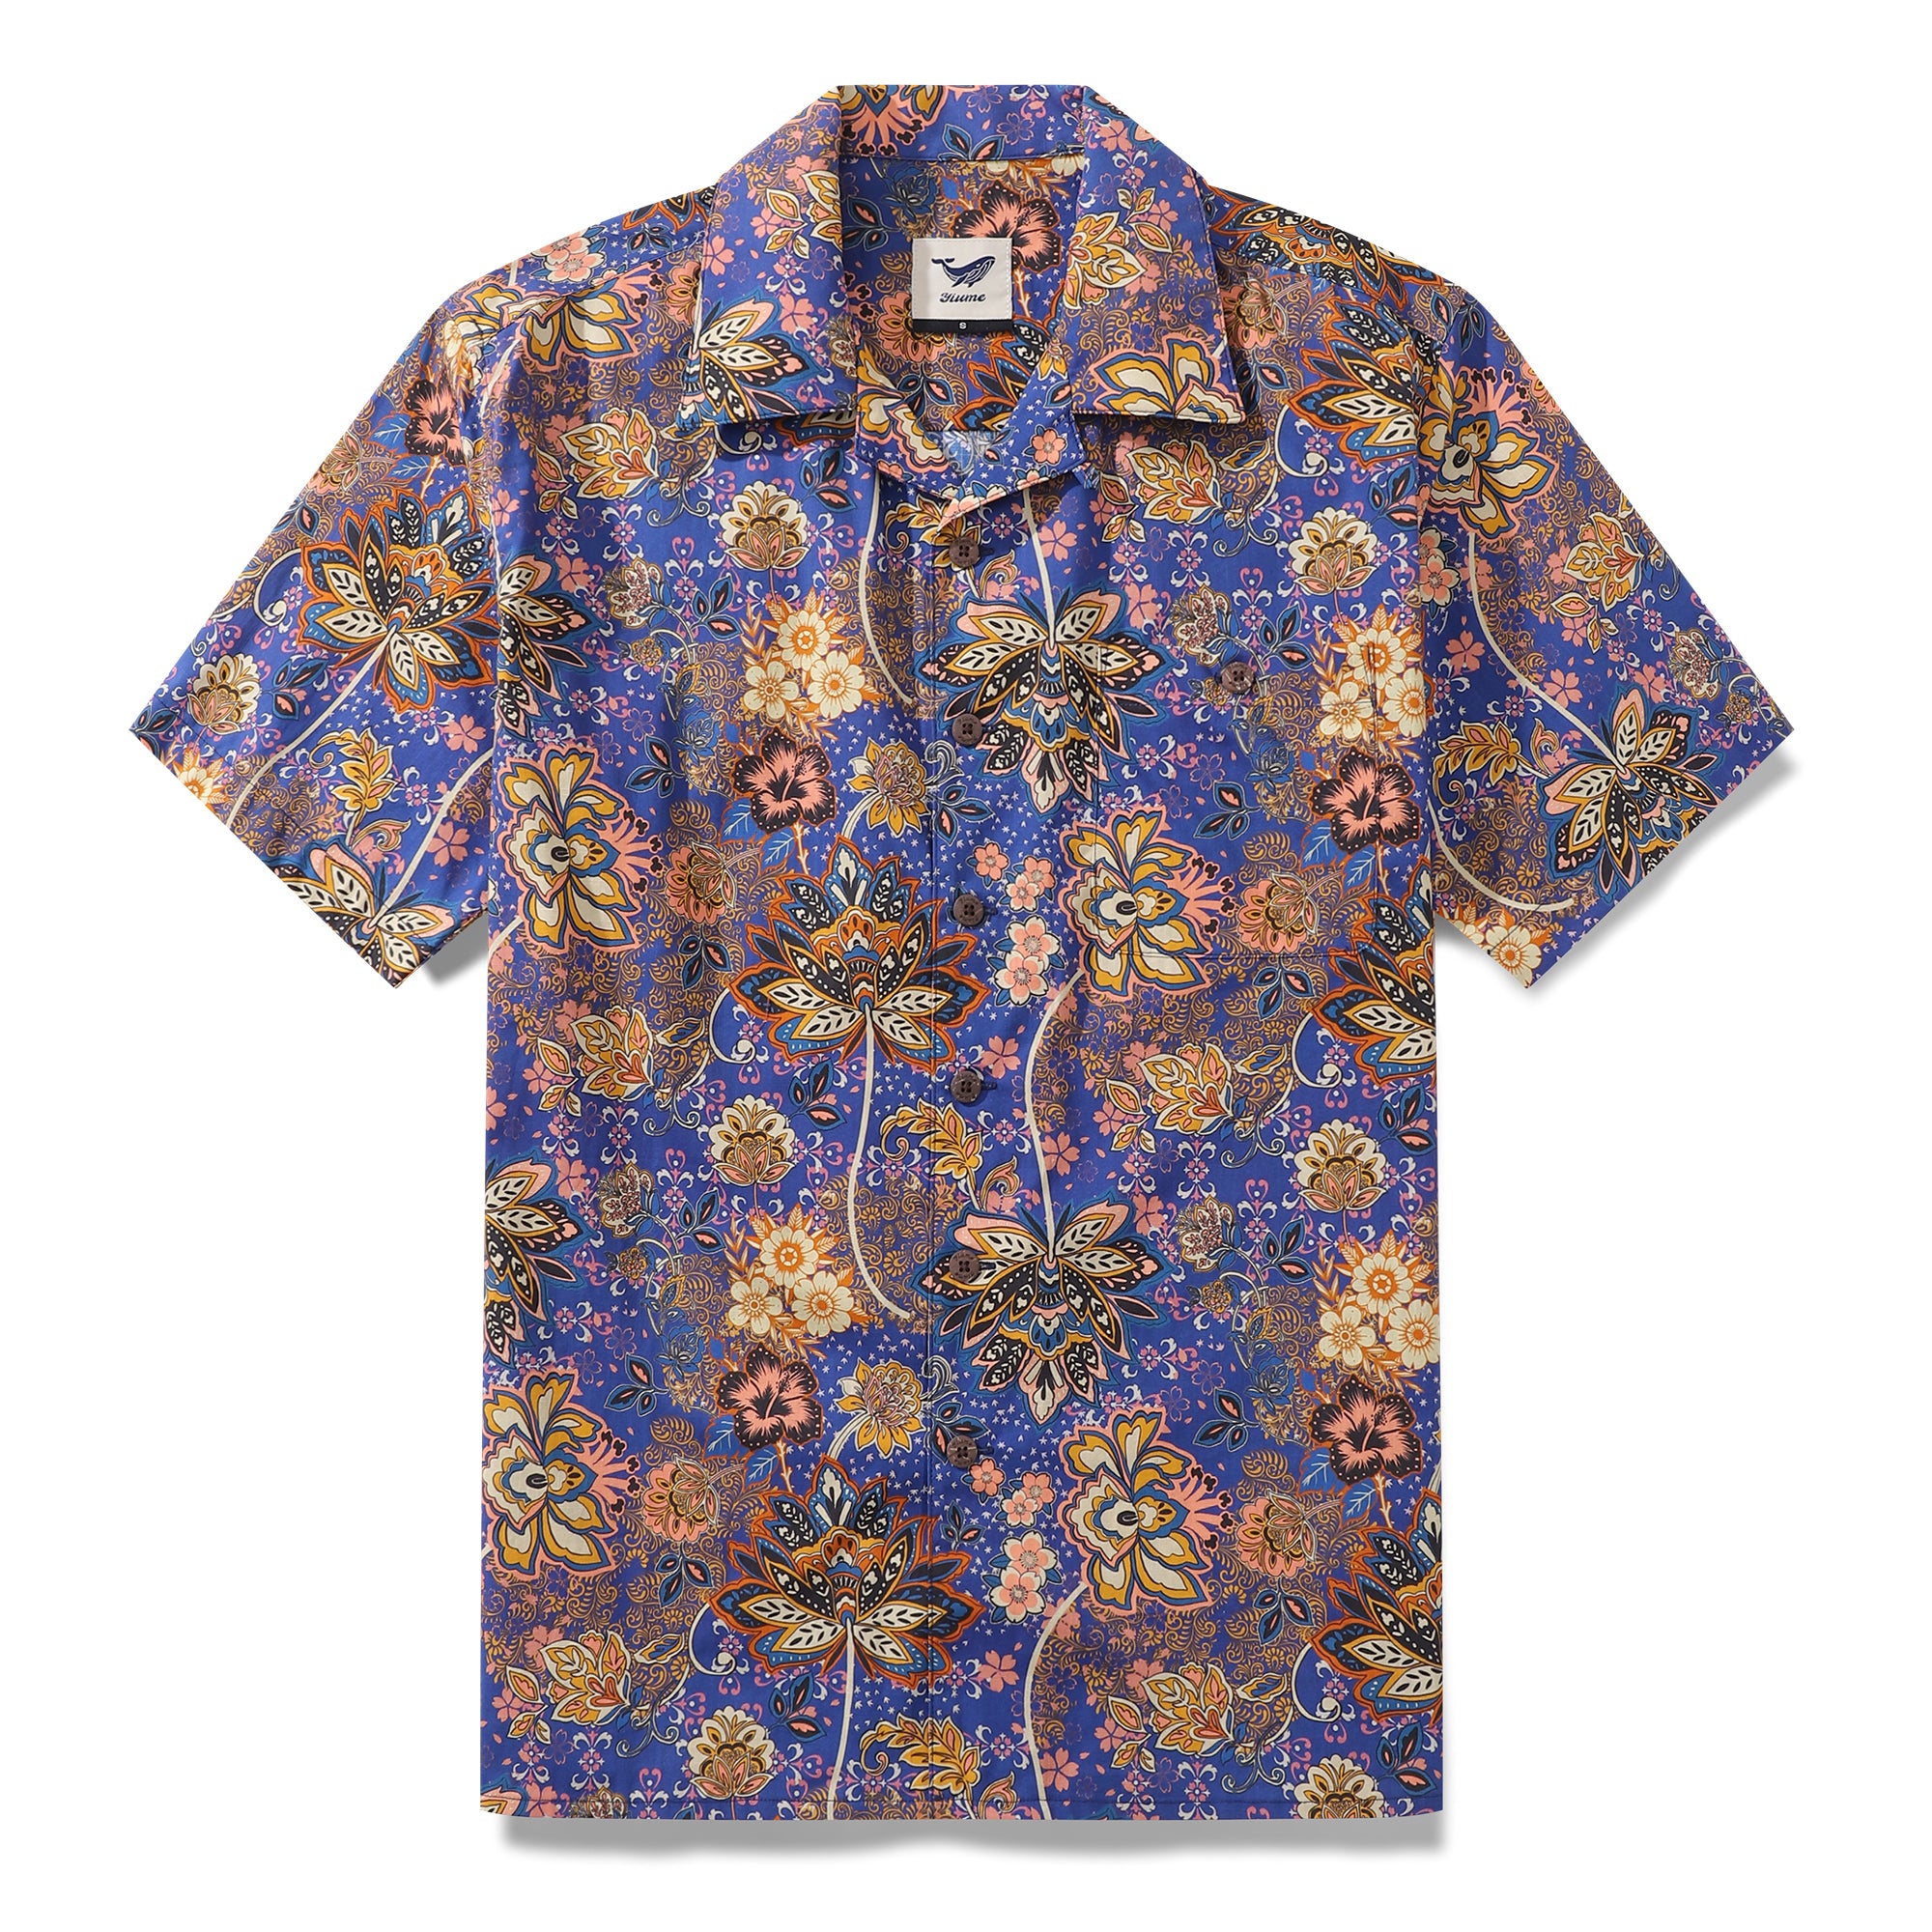 Hawaiian Shirt For Men Garden of Dreams Shirt Camp Collar 100% Cotton